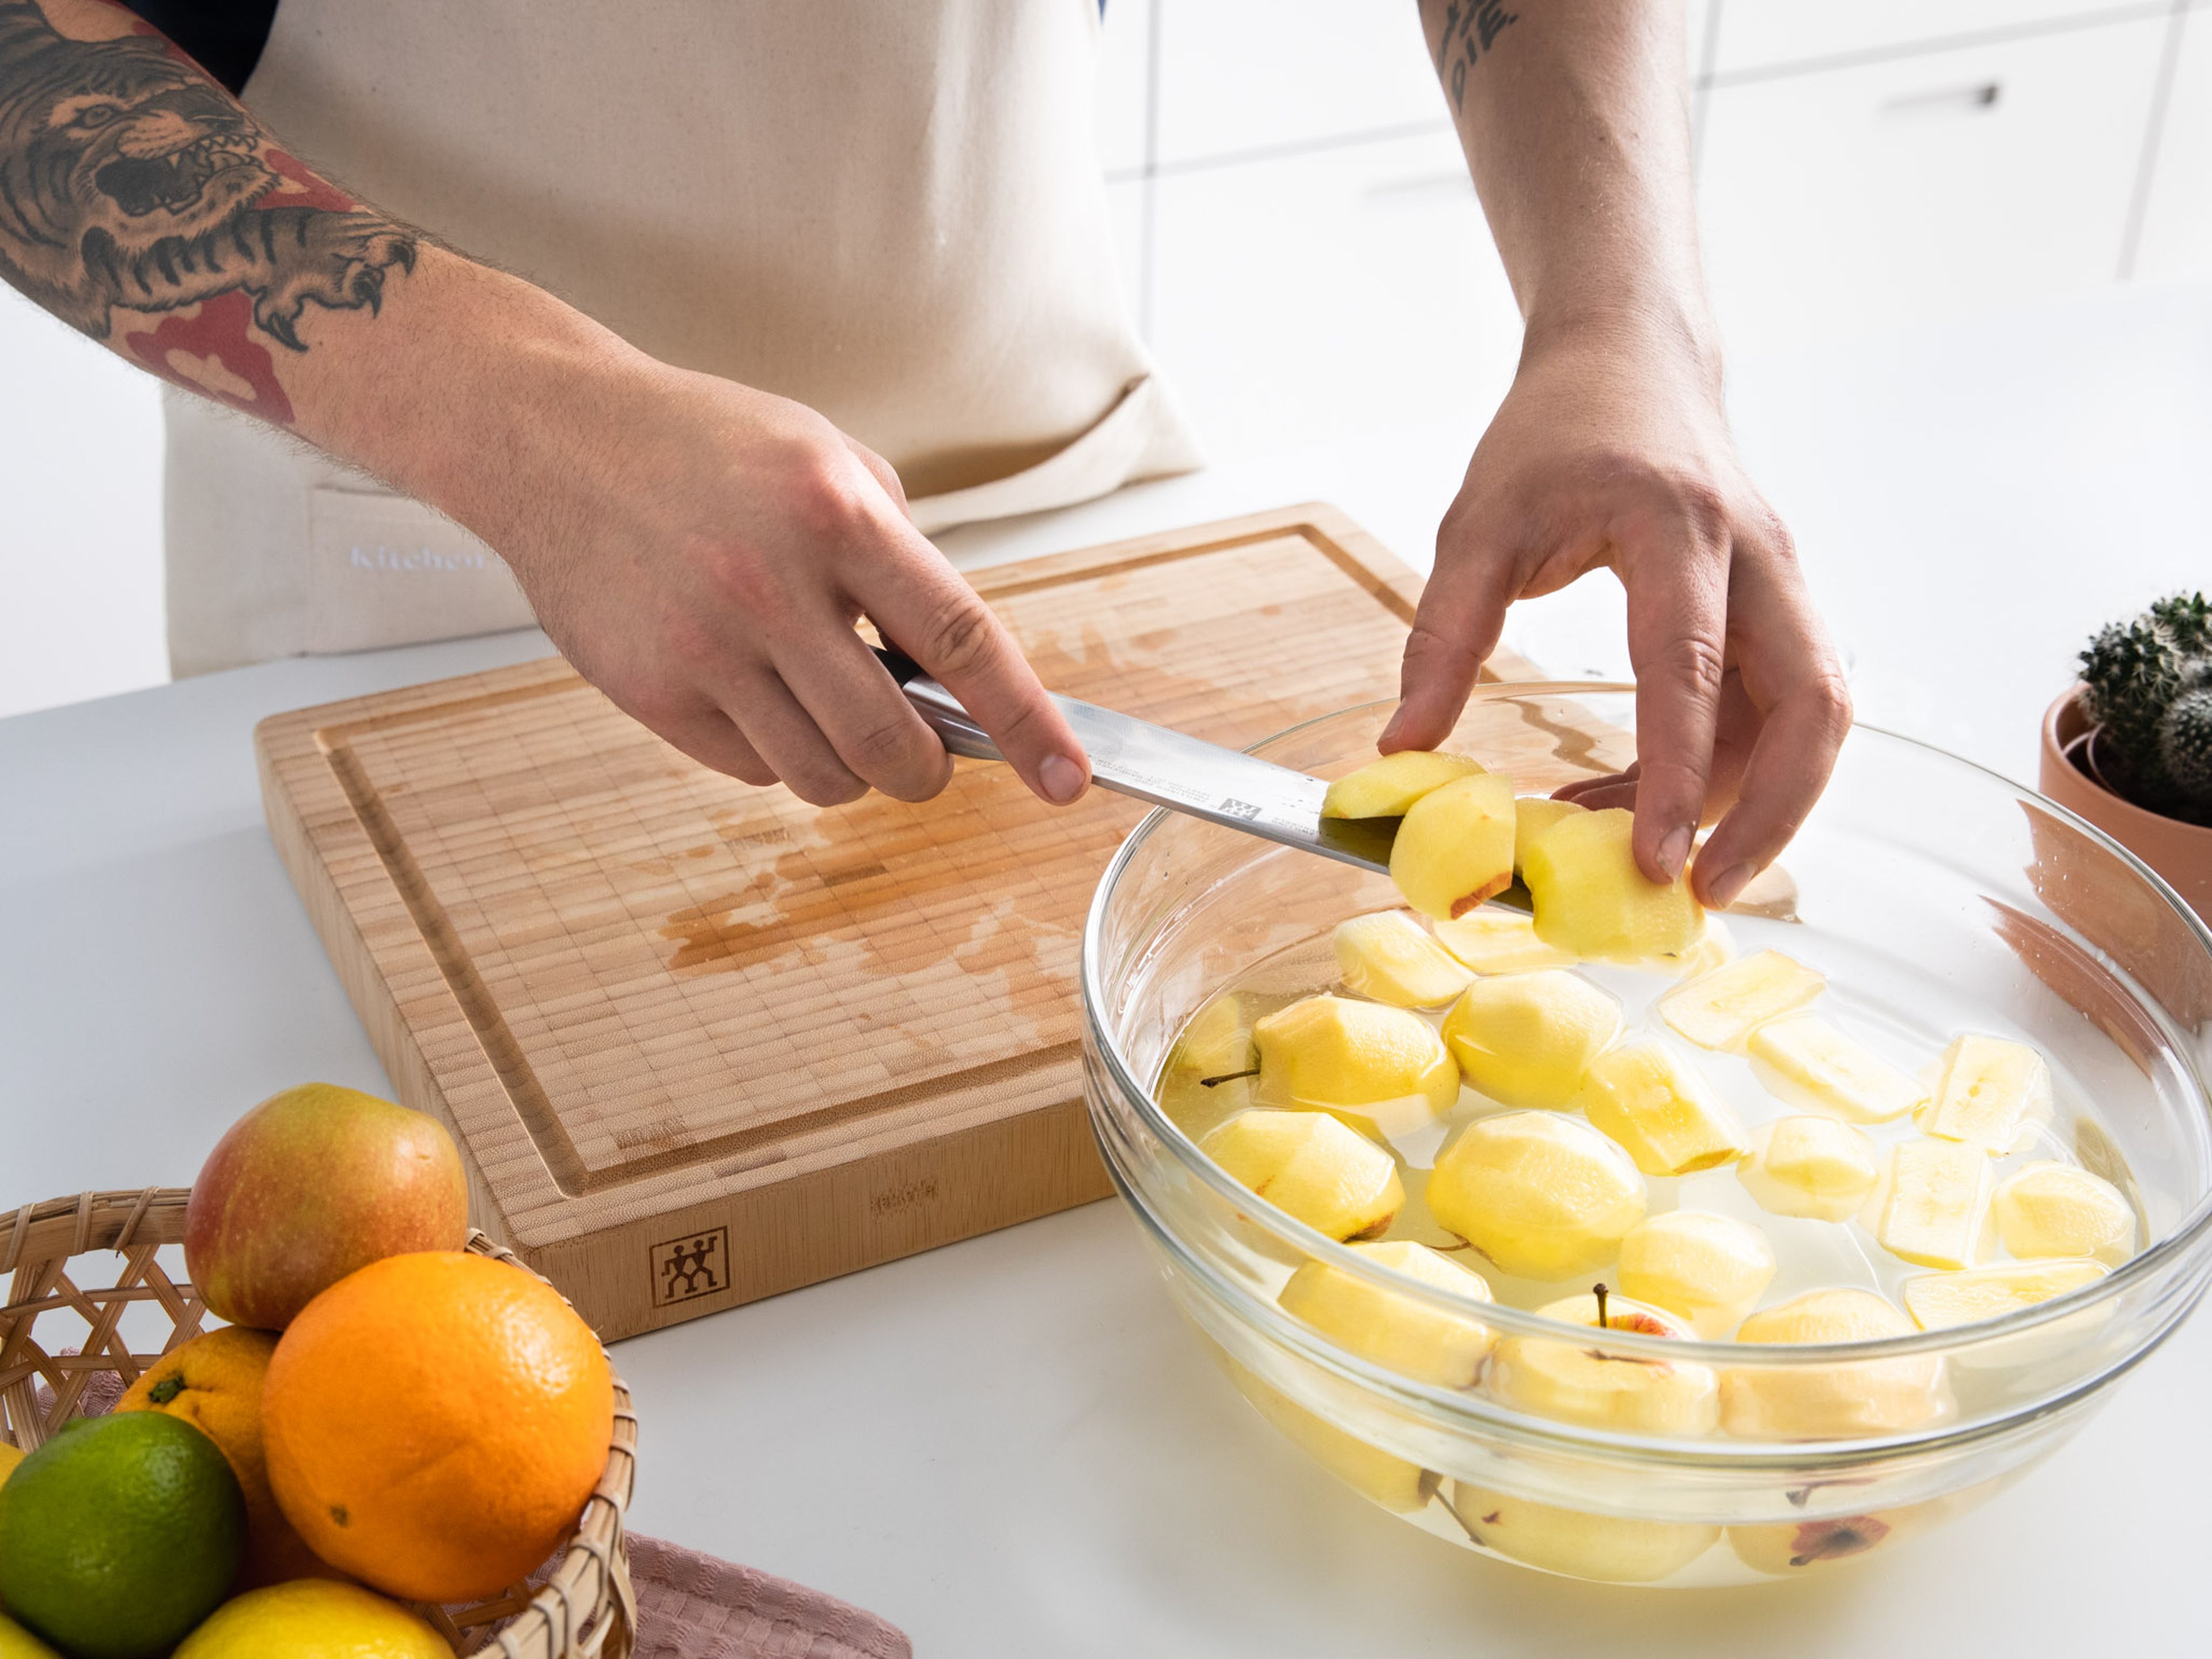 Während der Teig ruht, Äpfel waschen, schälen und in mundgerechte Würfel schneiden. Gebe die Apfelstücke in eine große Schüssel mit Wasser und füge Zitronensaft hinzu. Beiseitestellen.